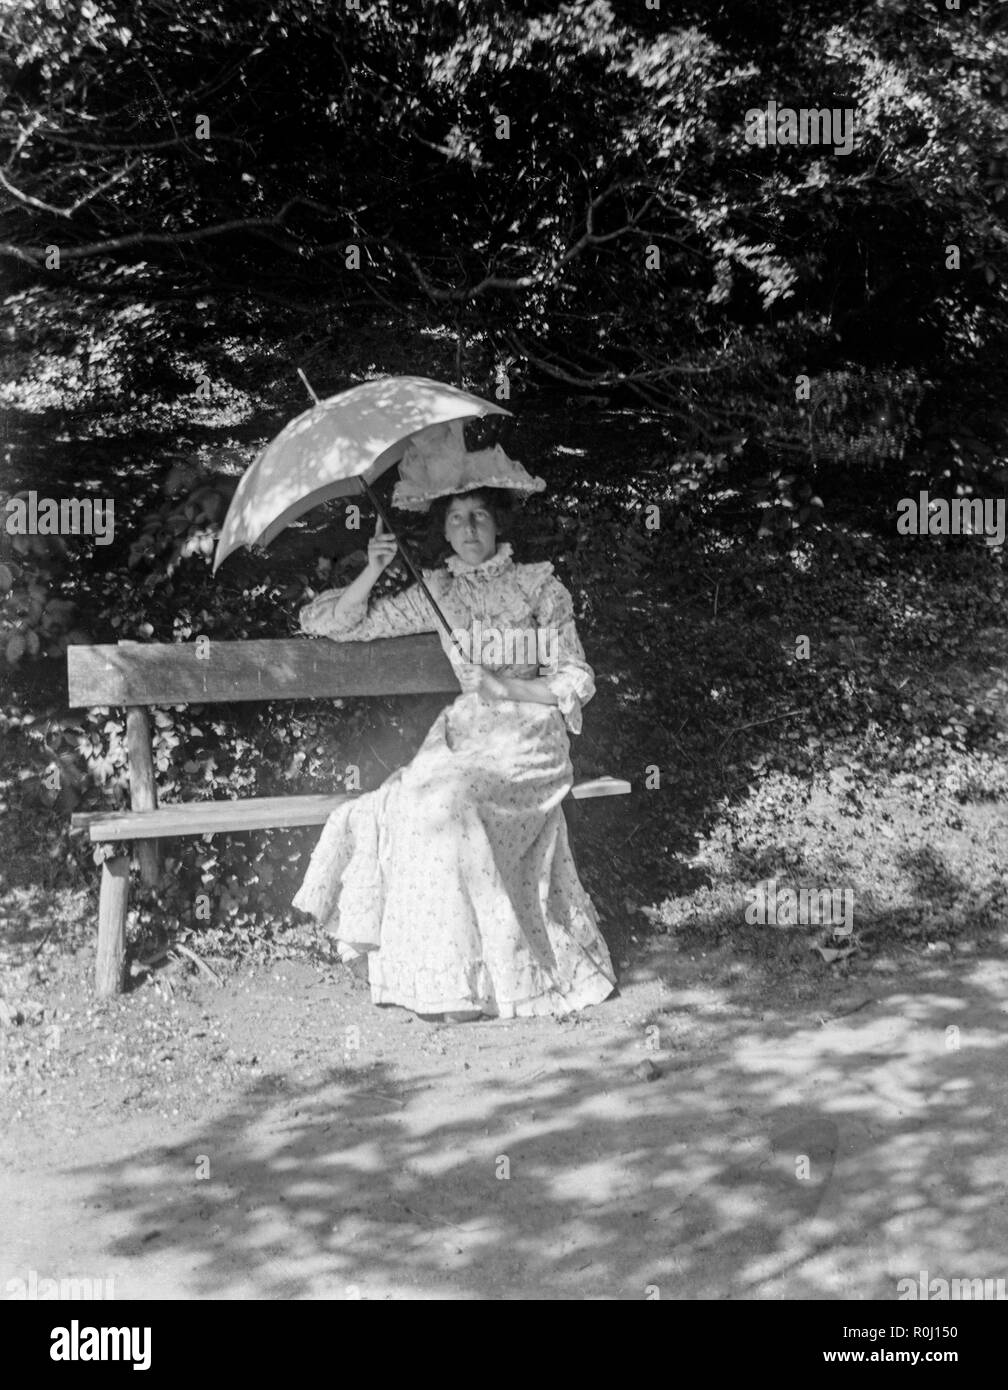 Un Edwardian fotografia in bianco e nero che mostra una giovane donna seduta su una panchina sotto un albero, vestito in belle abiti formali, mentre tiene un ombrellone sopra la sua testa. Foto Stock